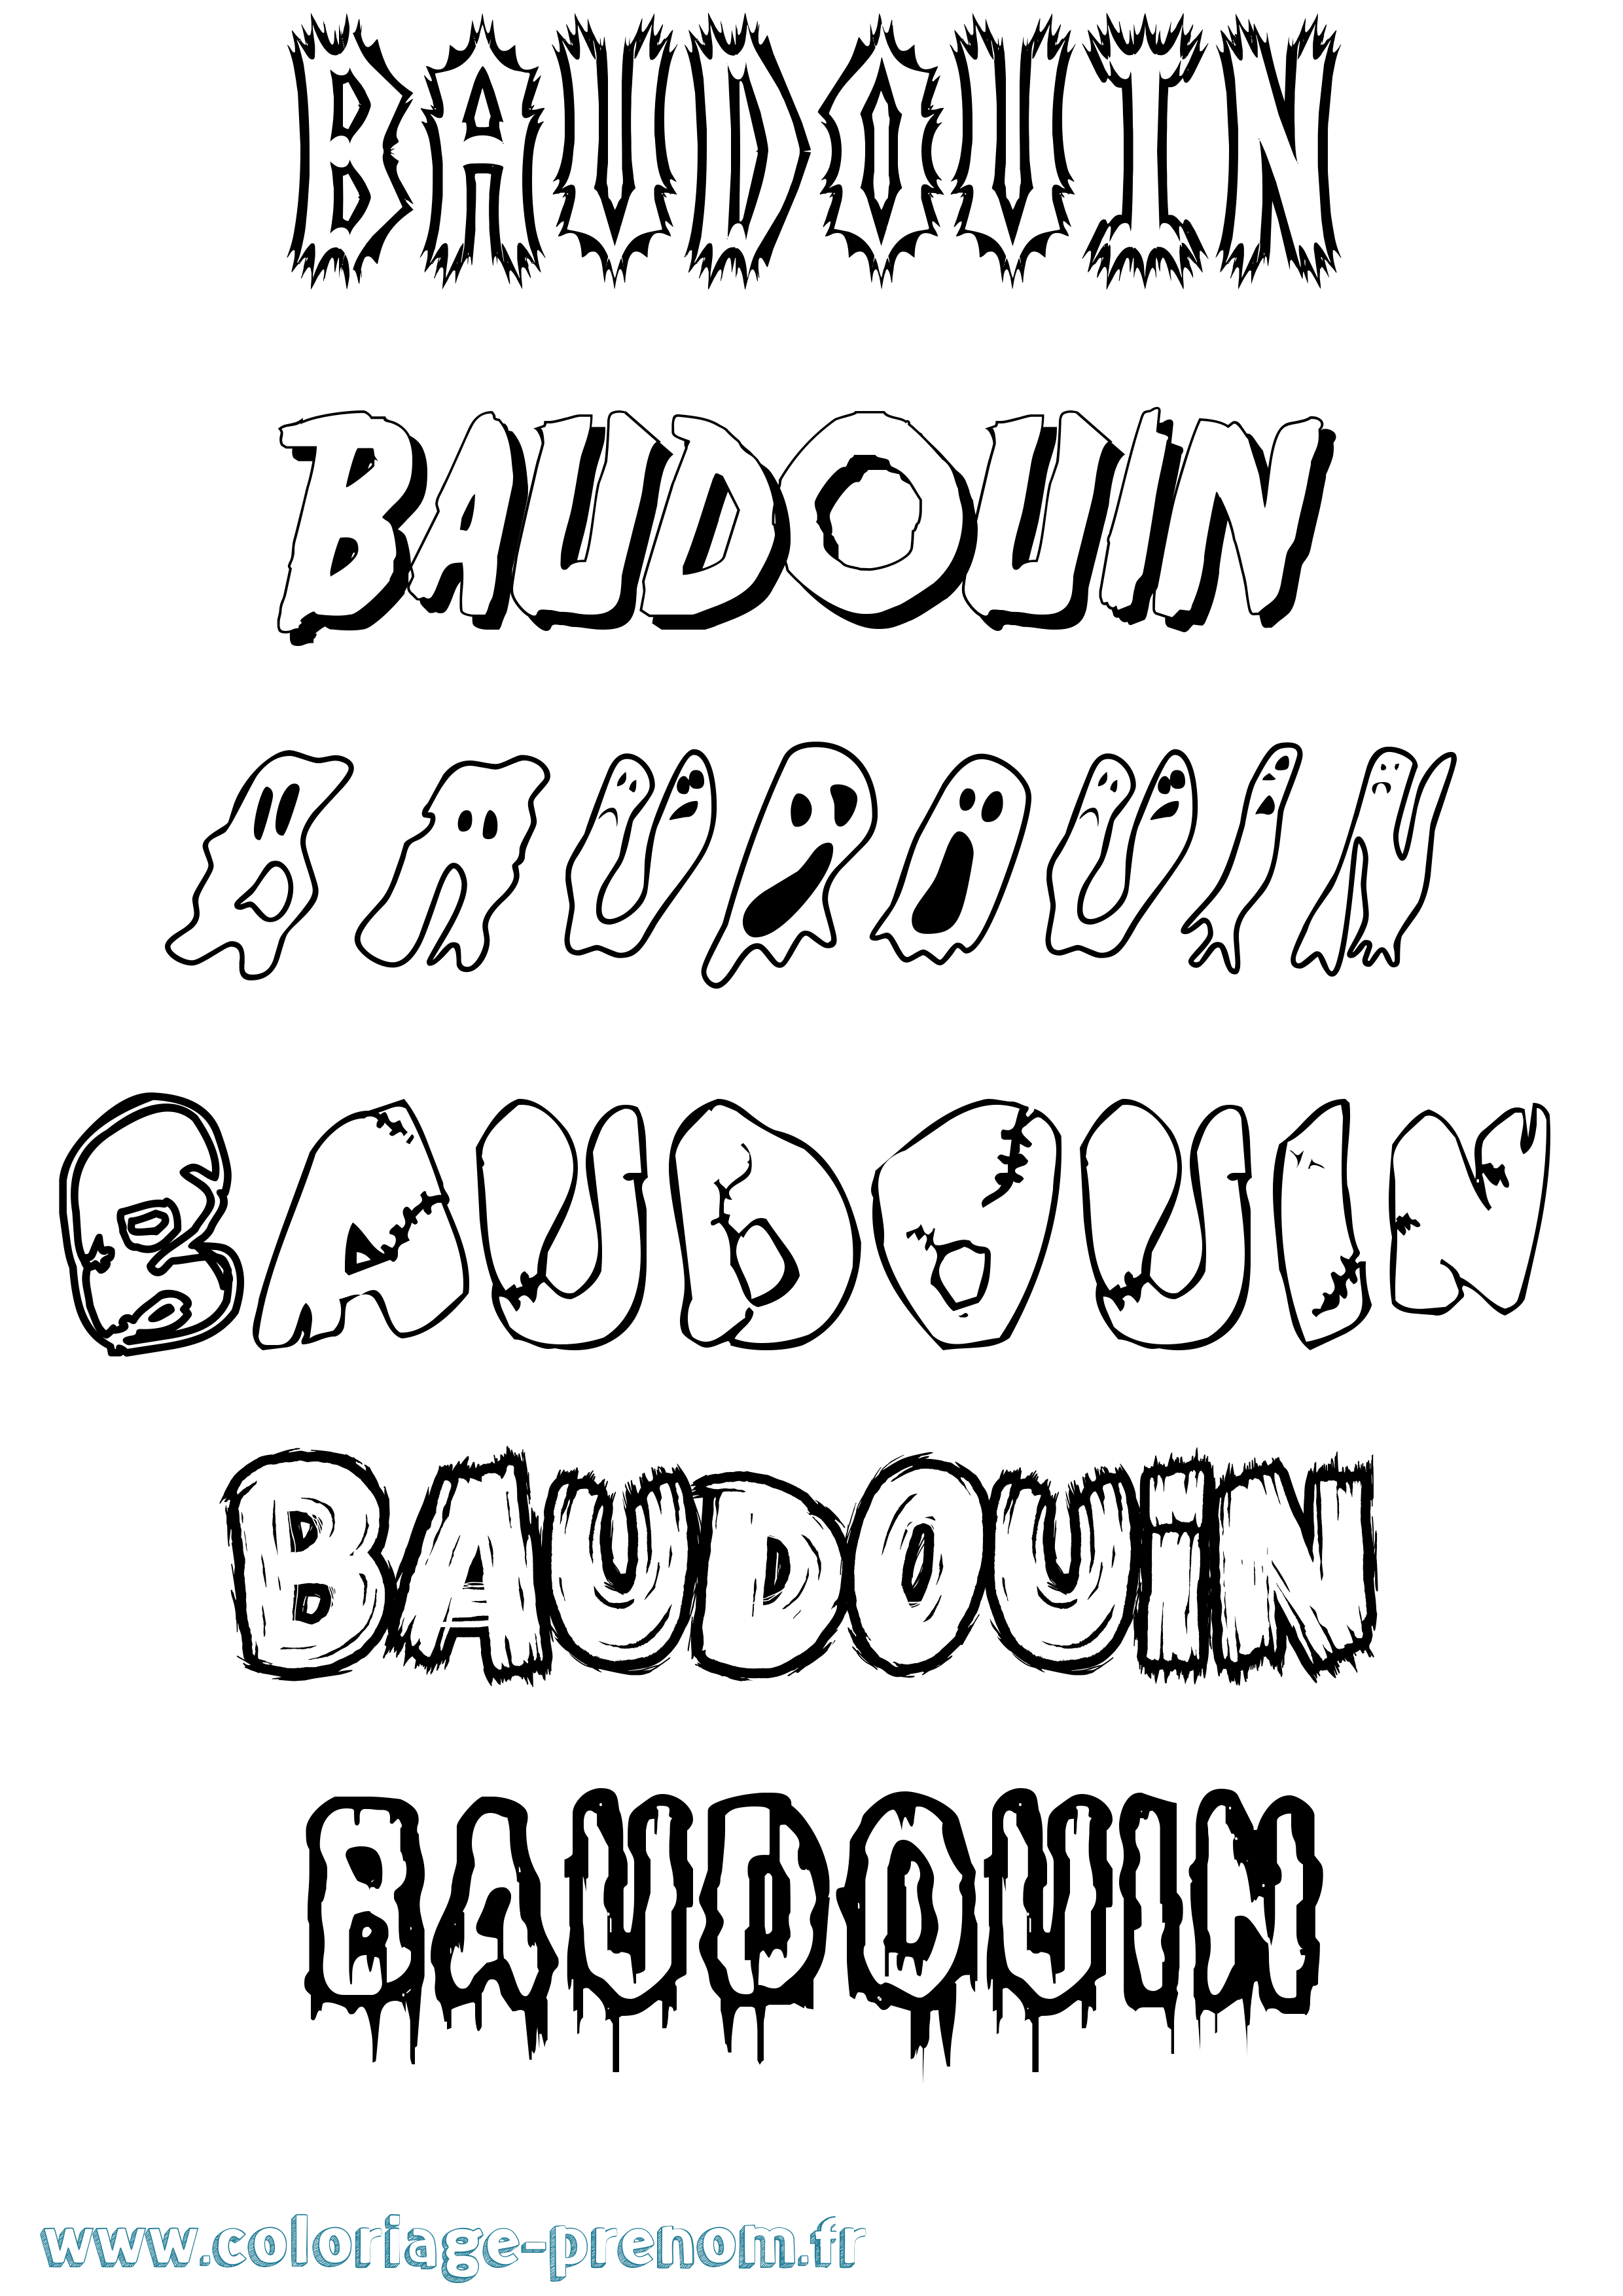 Coloriage prénom Baudouin